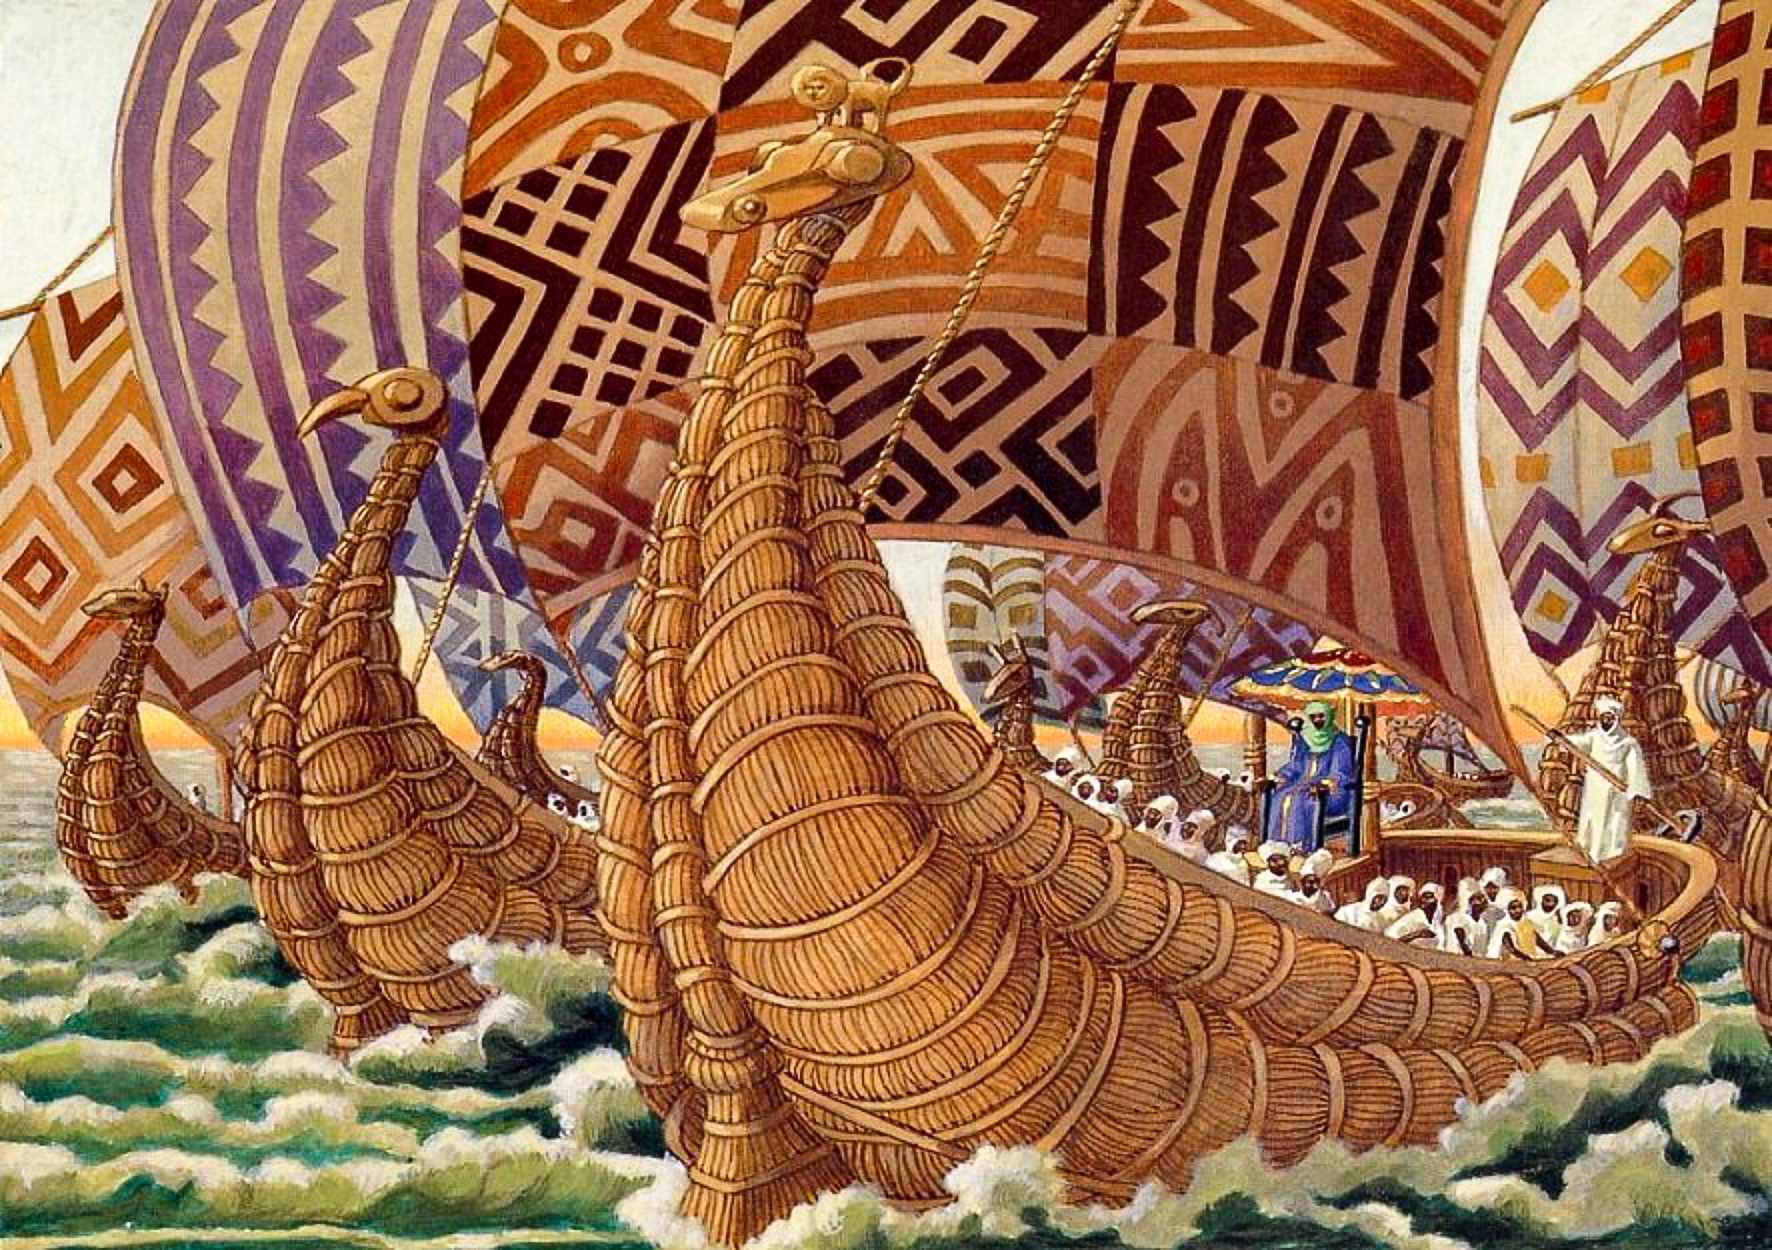 चित्रण गर्दै - अबु बकरी द्वितीय आफ्नो विशाल फ्लीटको साथ एट्लान्टिक पार गर्दै पश्चिममा यात्रा गर्दै।